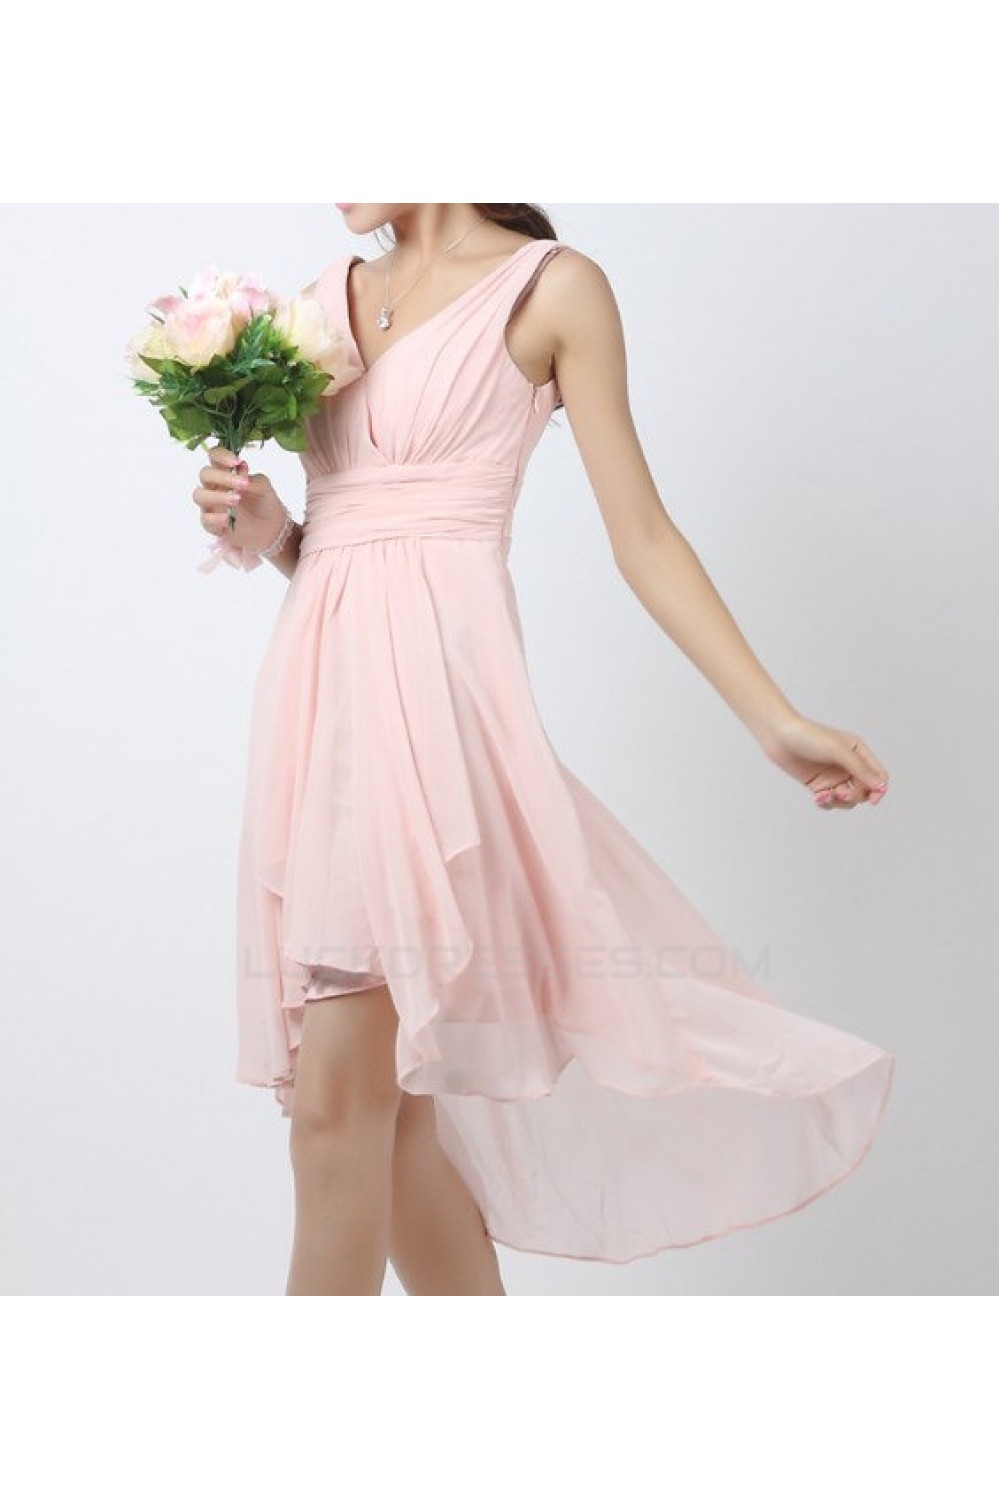 pink chiffon dress short